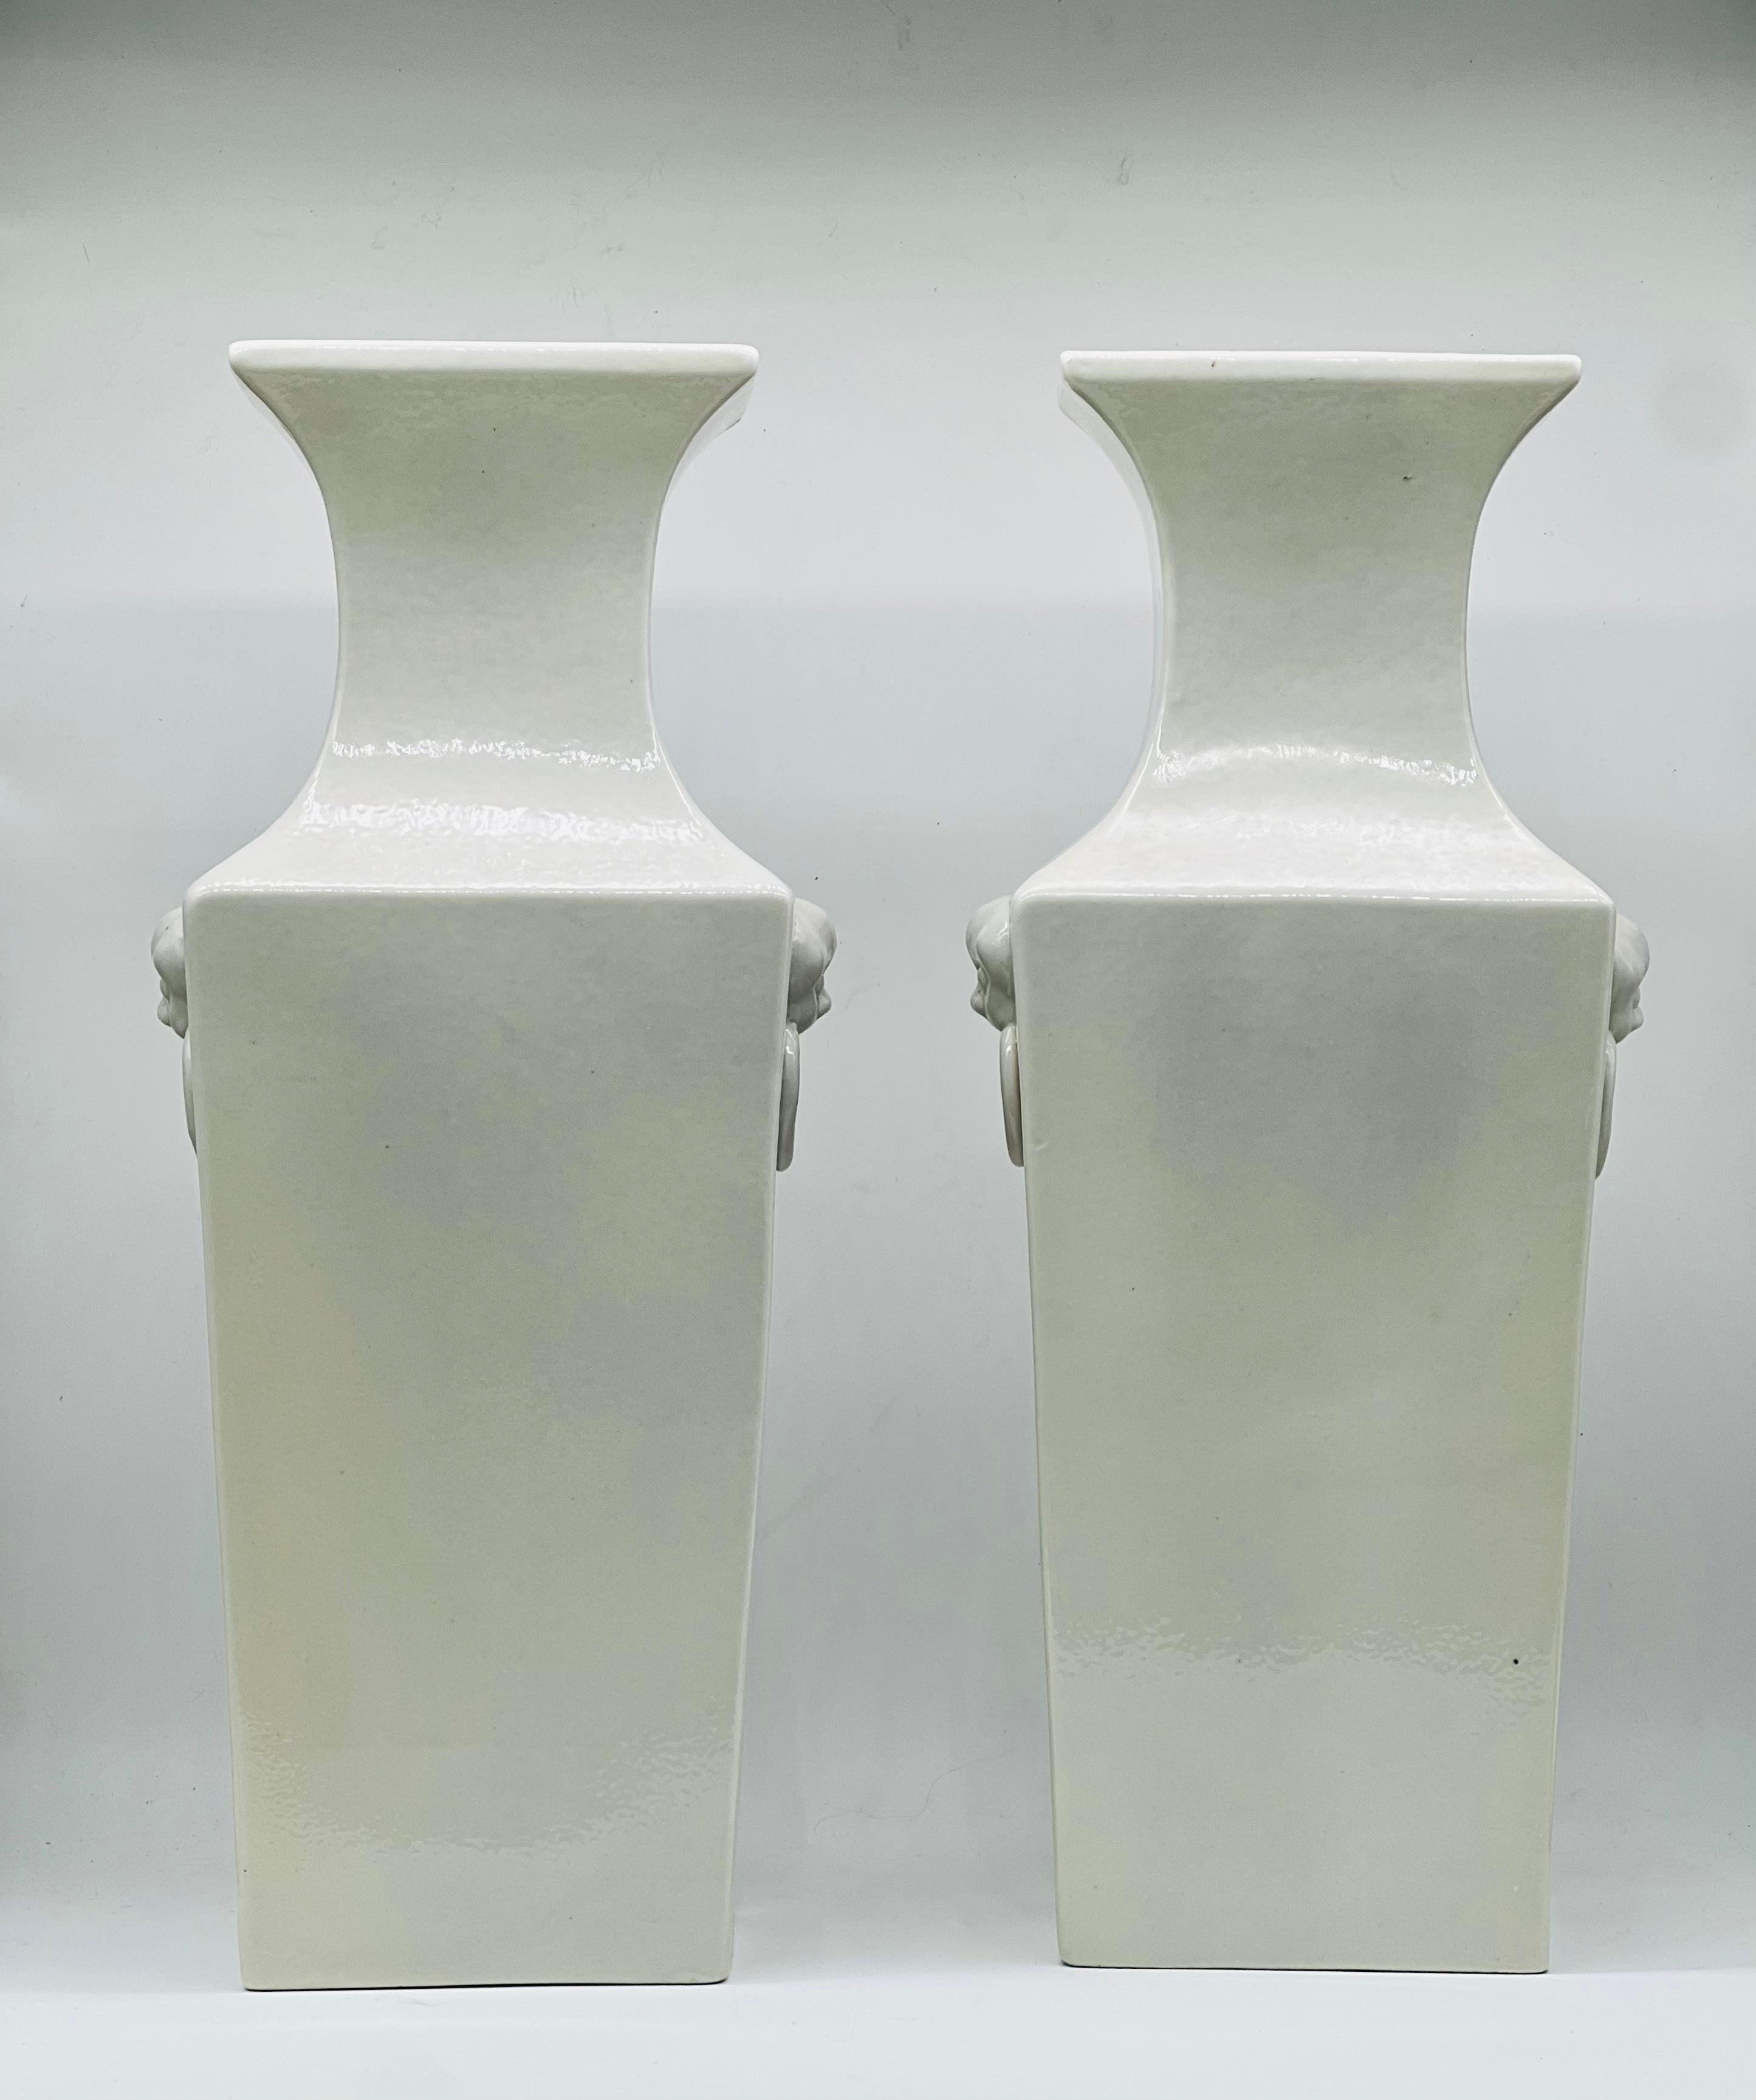 Ein großes Paar chinesischer Blanc de Chine-Vasen. Zeit der Republik. Anfang 20. Jahrhundert


Ein schönes und sehr großes Paar chinesischer Blanc-de-Chine-Vasen aus dem frühen 20. Jh. Republik China. 
Der hohe, quadratische Korpus hat einen